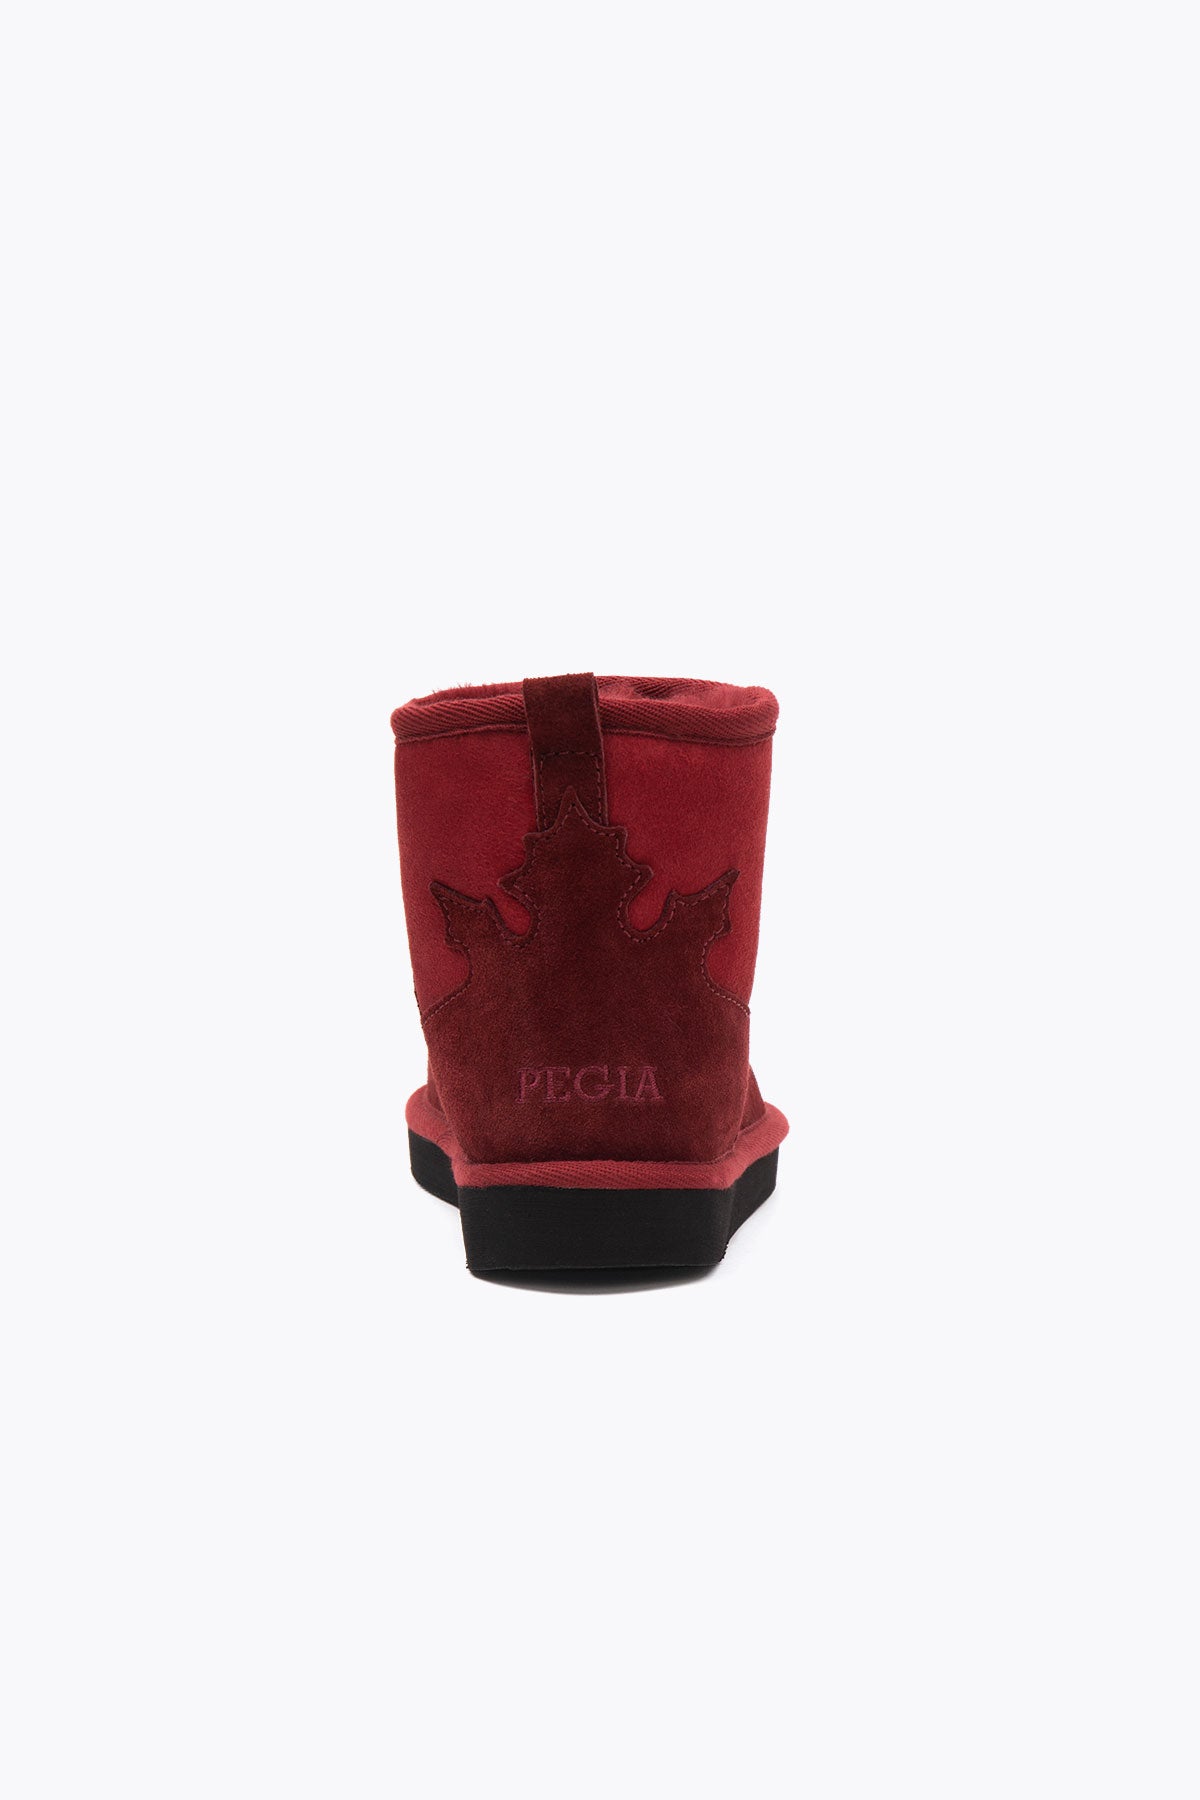 Pegia Lesa Genuine Suede Women's Mini Boots